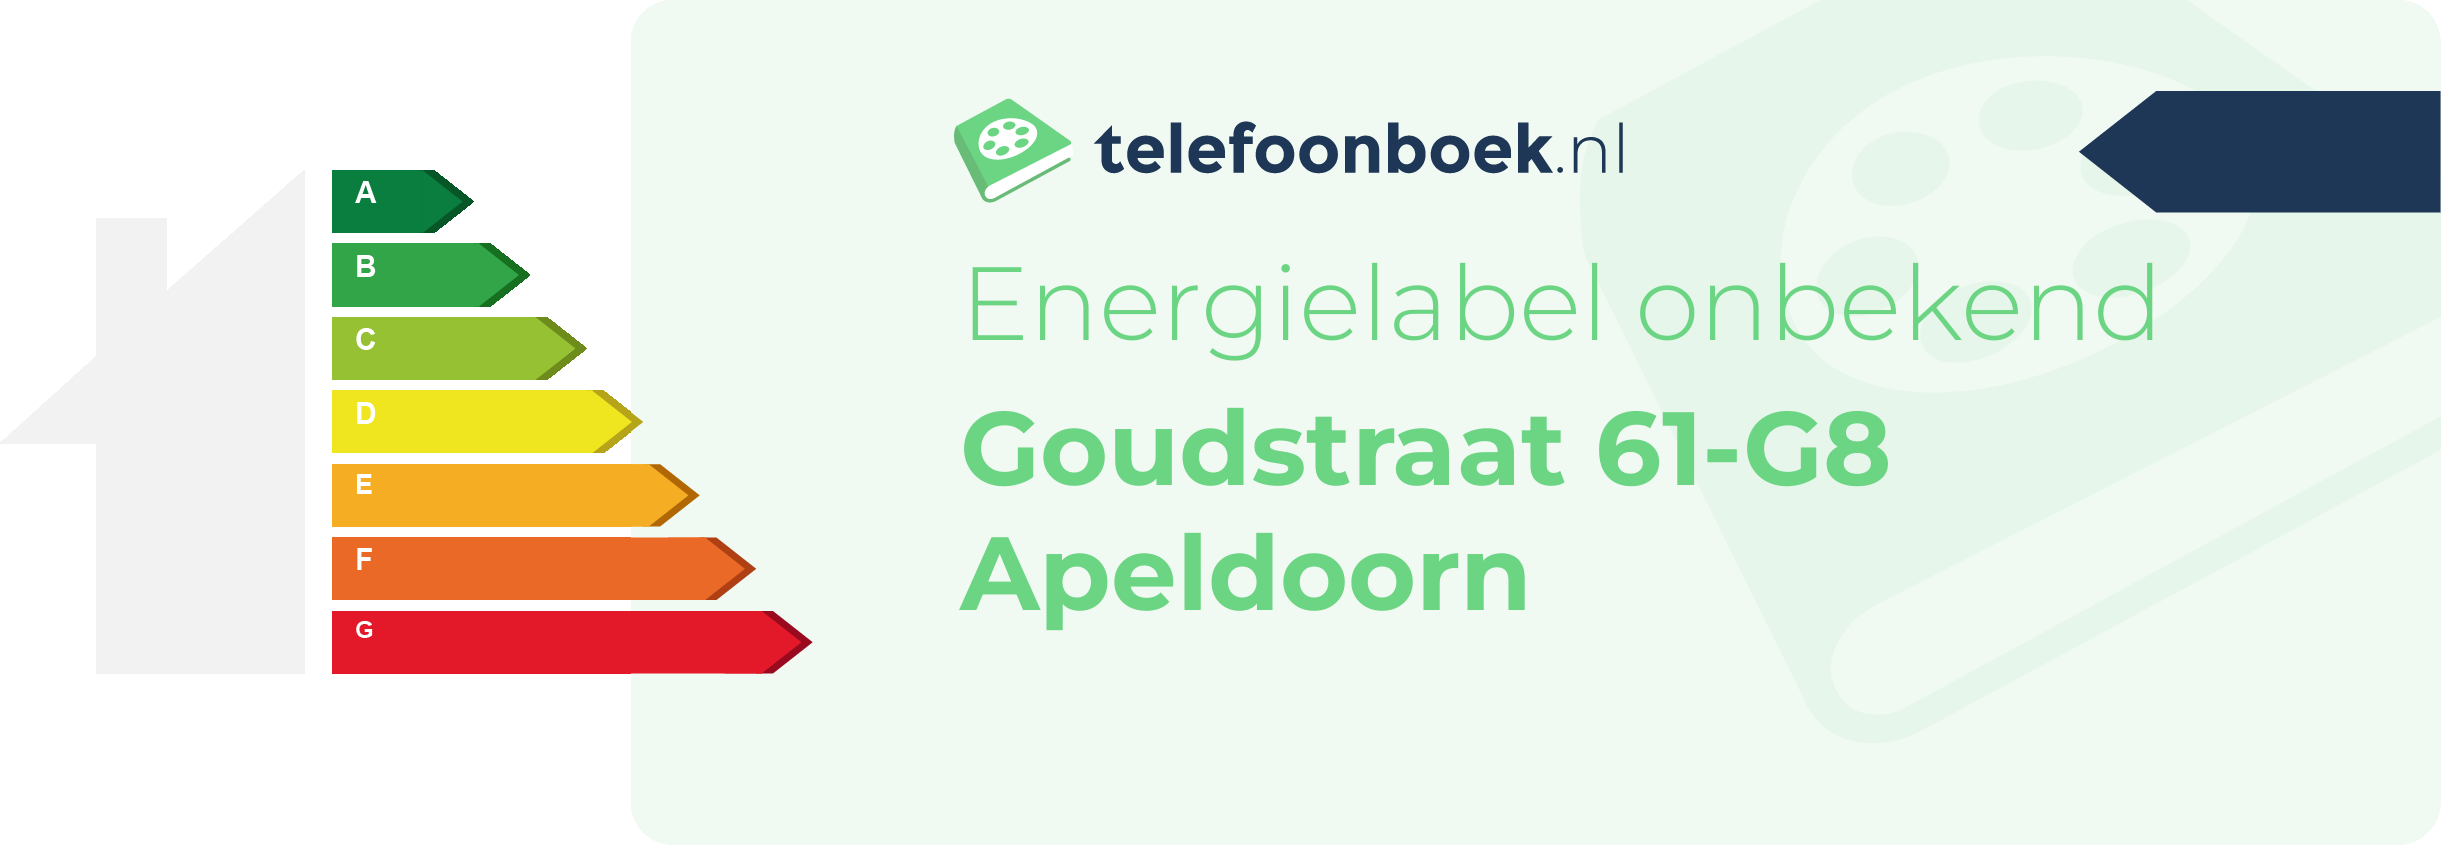 Energielabel Goudstraat 61-G8 Apeldoorn